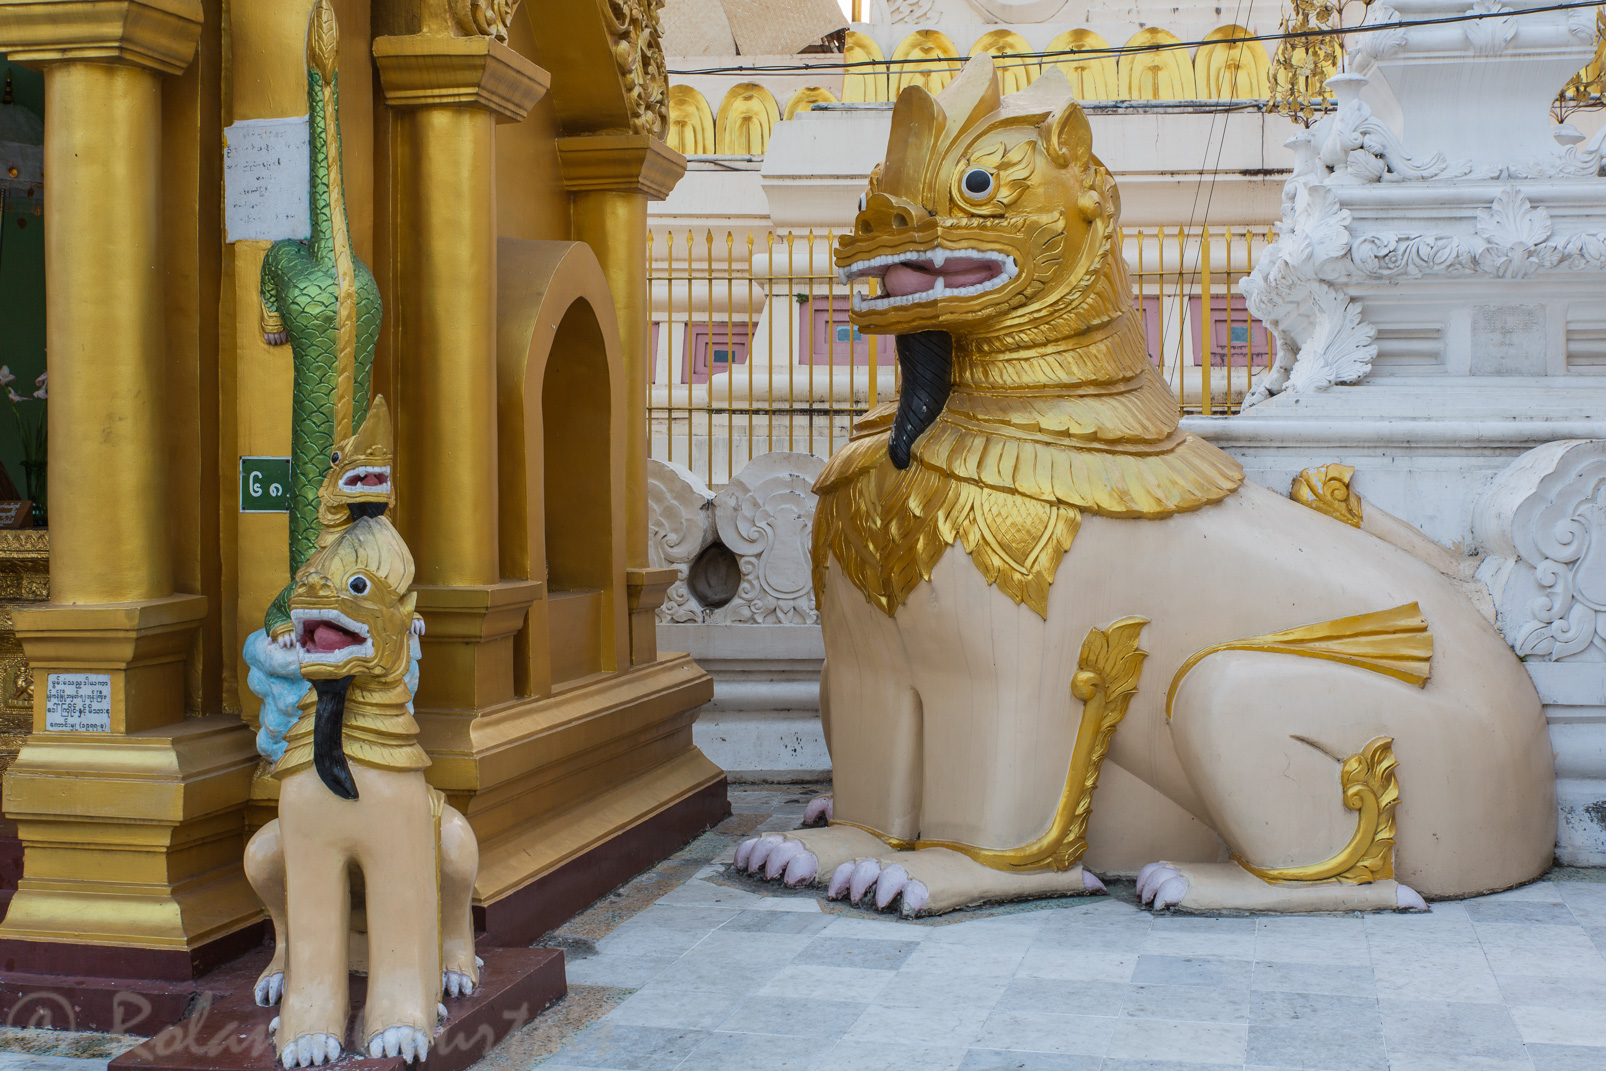 Animaux fantastiques protégeans le passage vers le stupa Shwedagon.